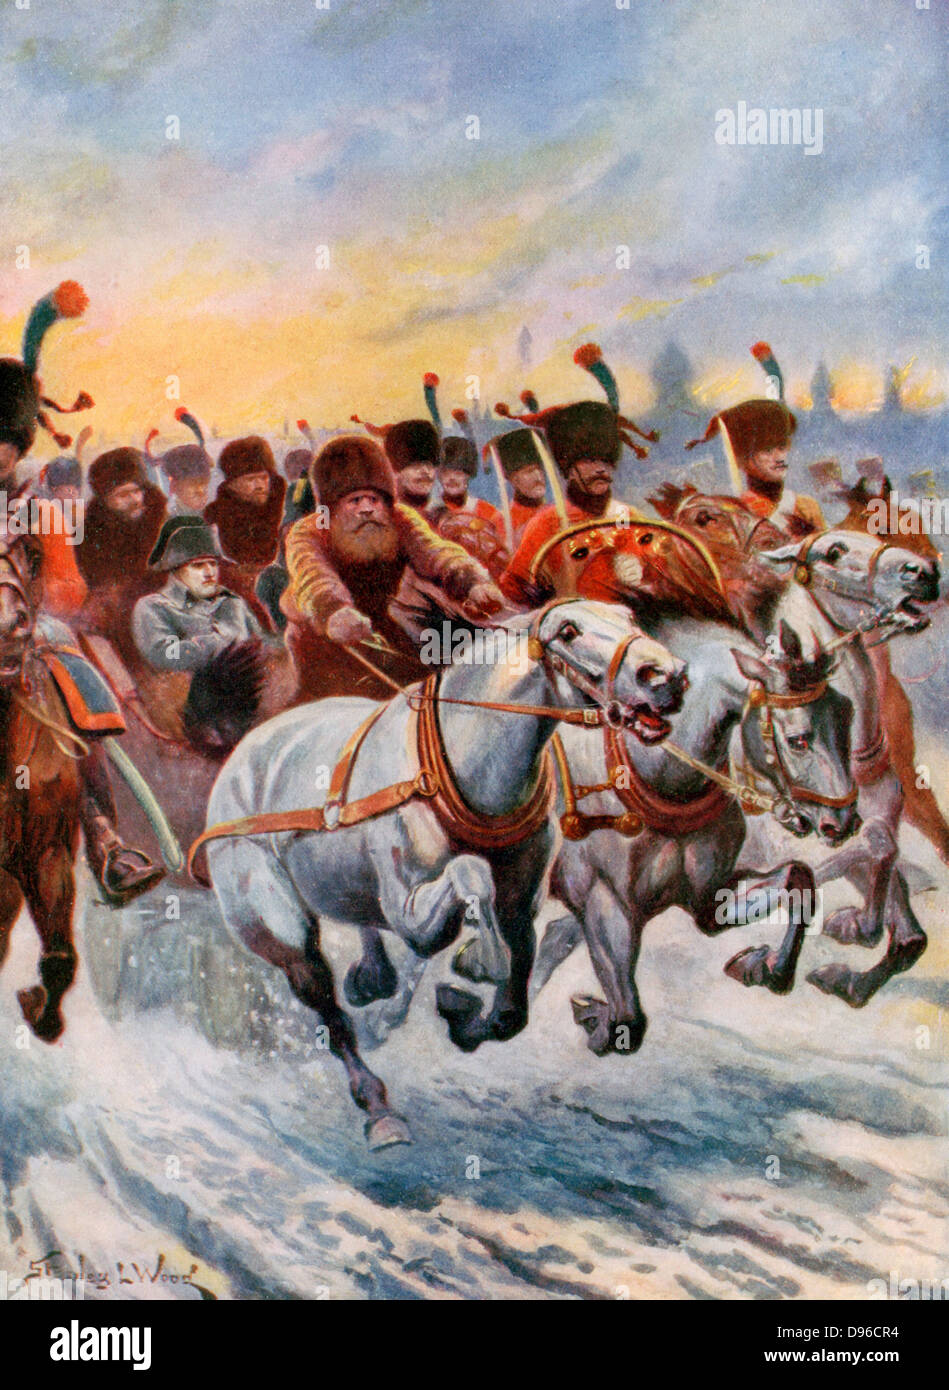 Napoleon Rückzug aus Moskau, 1812. Von den 600.000 Soldaten seiner Grande Armee, nur etwa 100.000 zurück. Jahrhunderts Buch Abbildung. Stockfoto